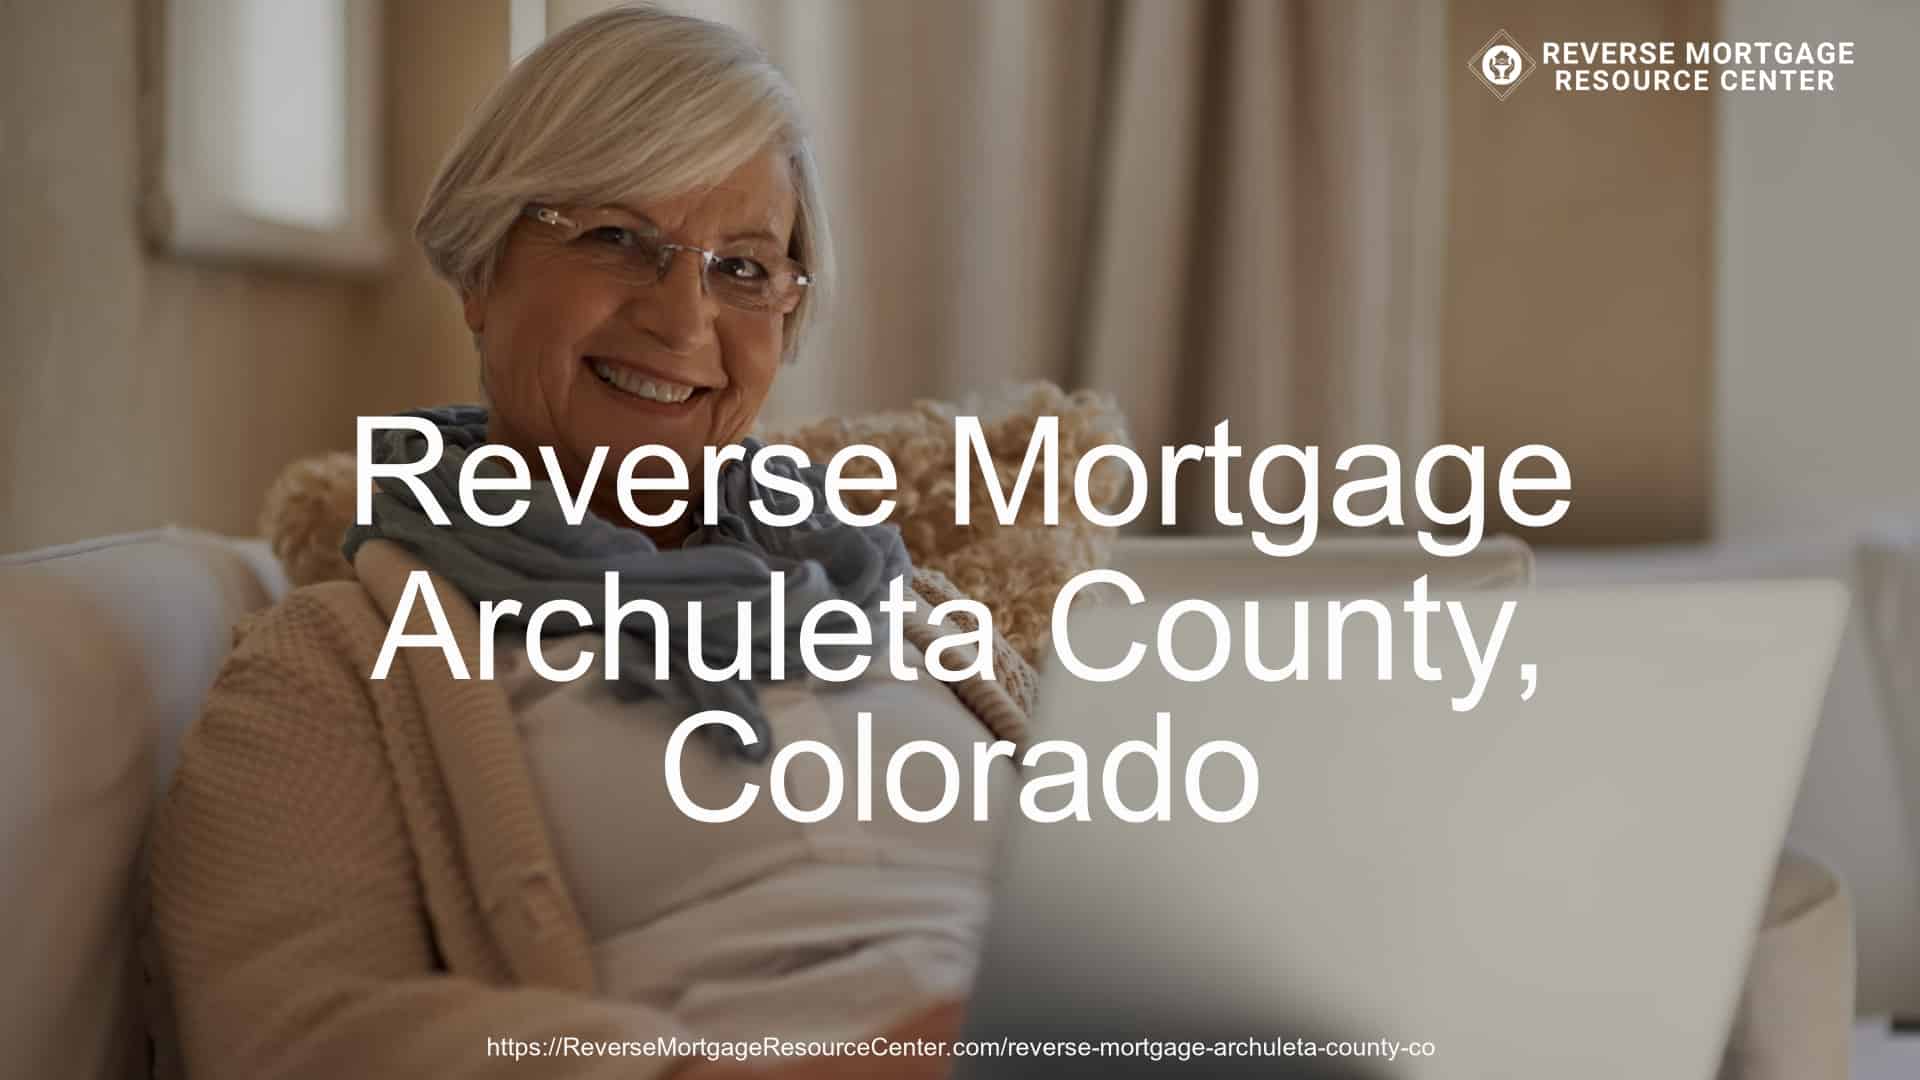 Reverse Mortgage Loans in Archuleta County Colorado